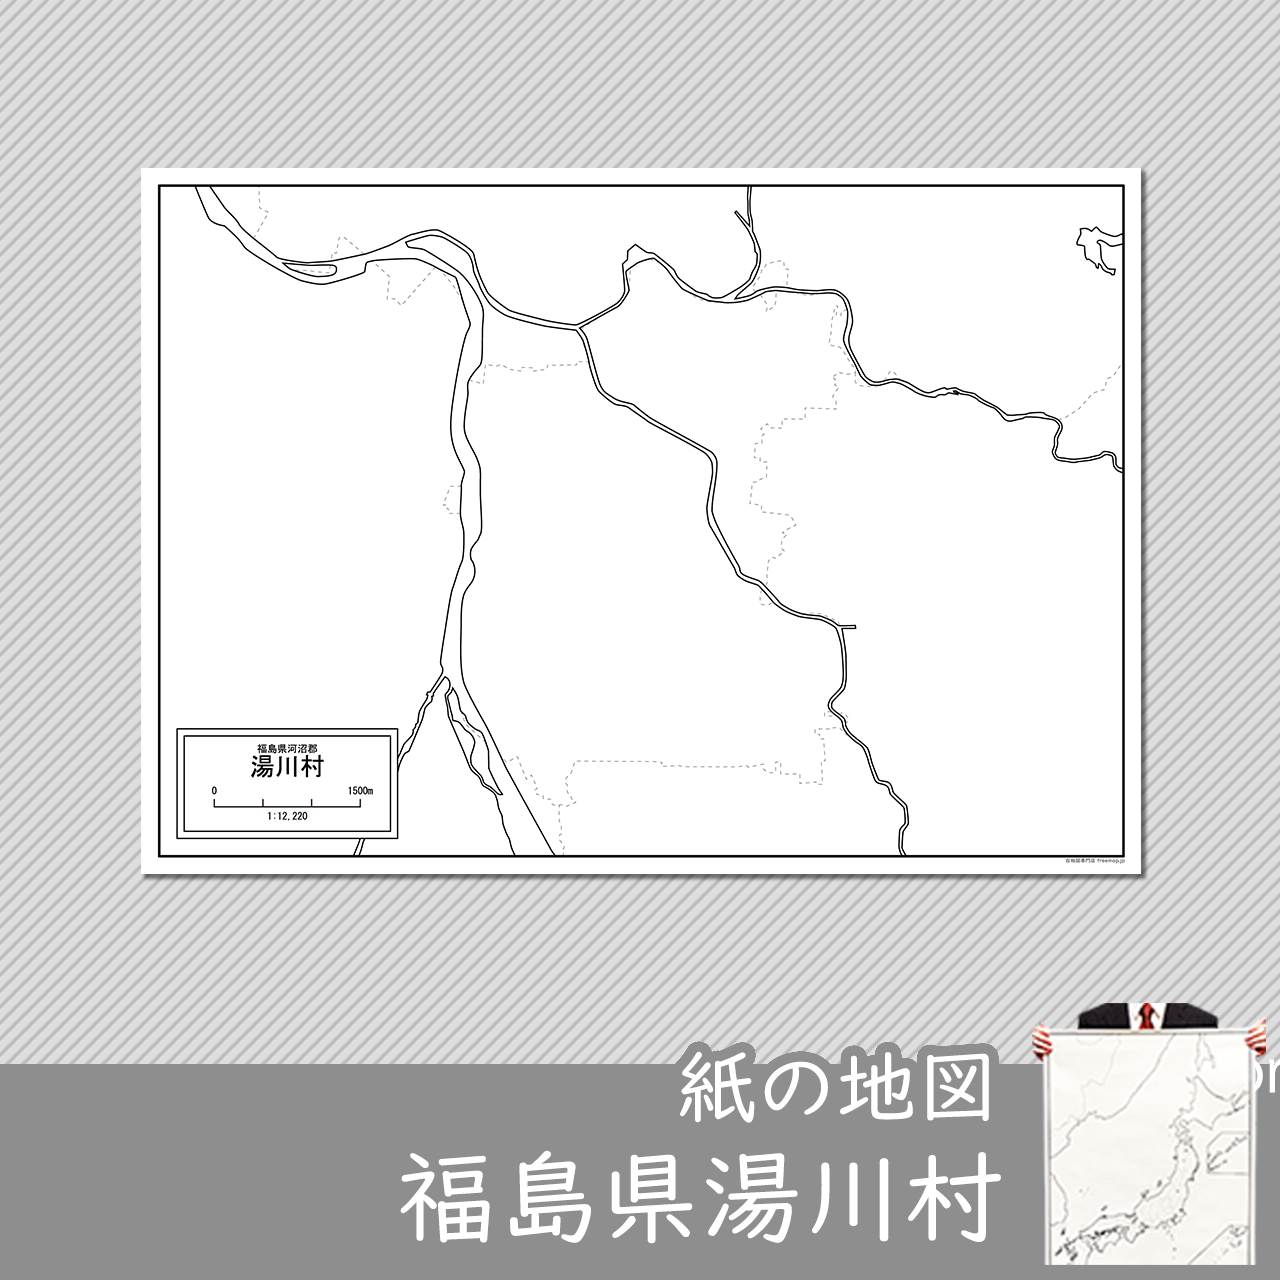 湯川村の紙の白地図